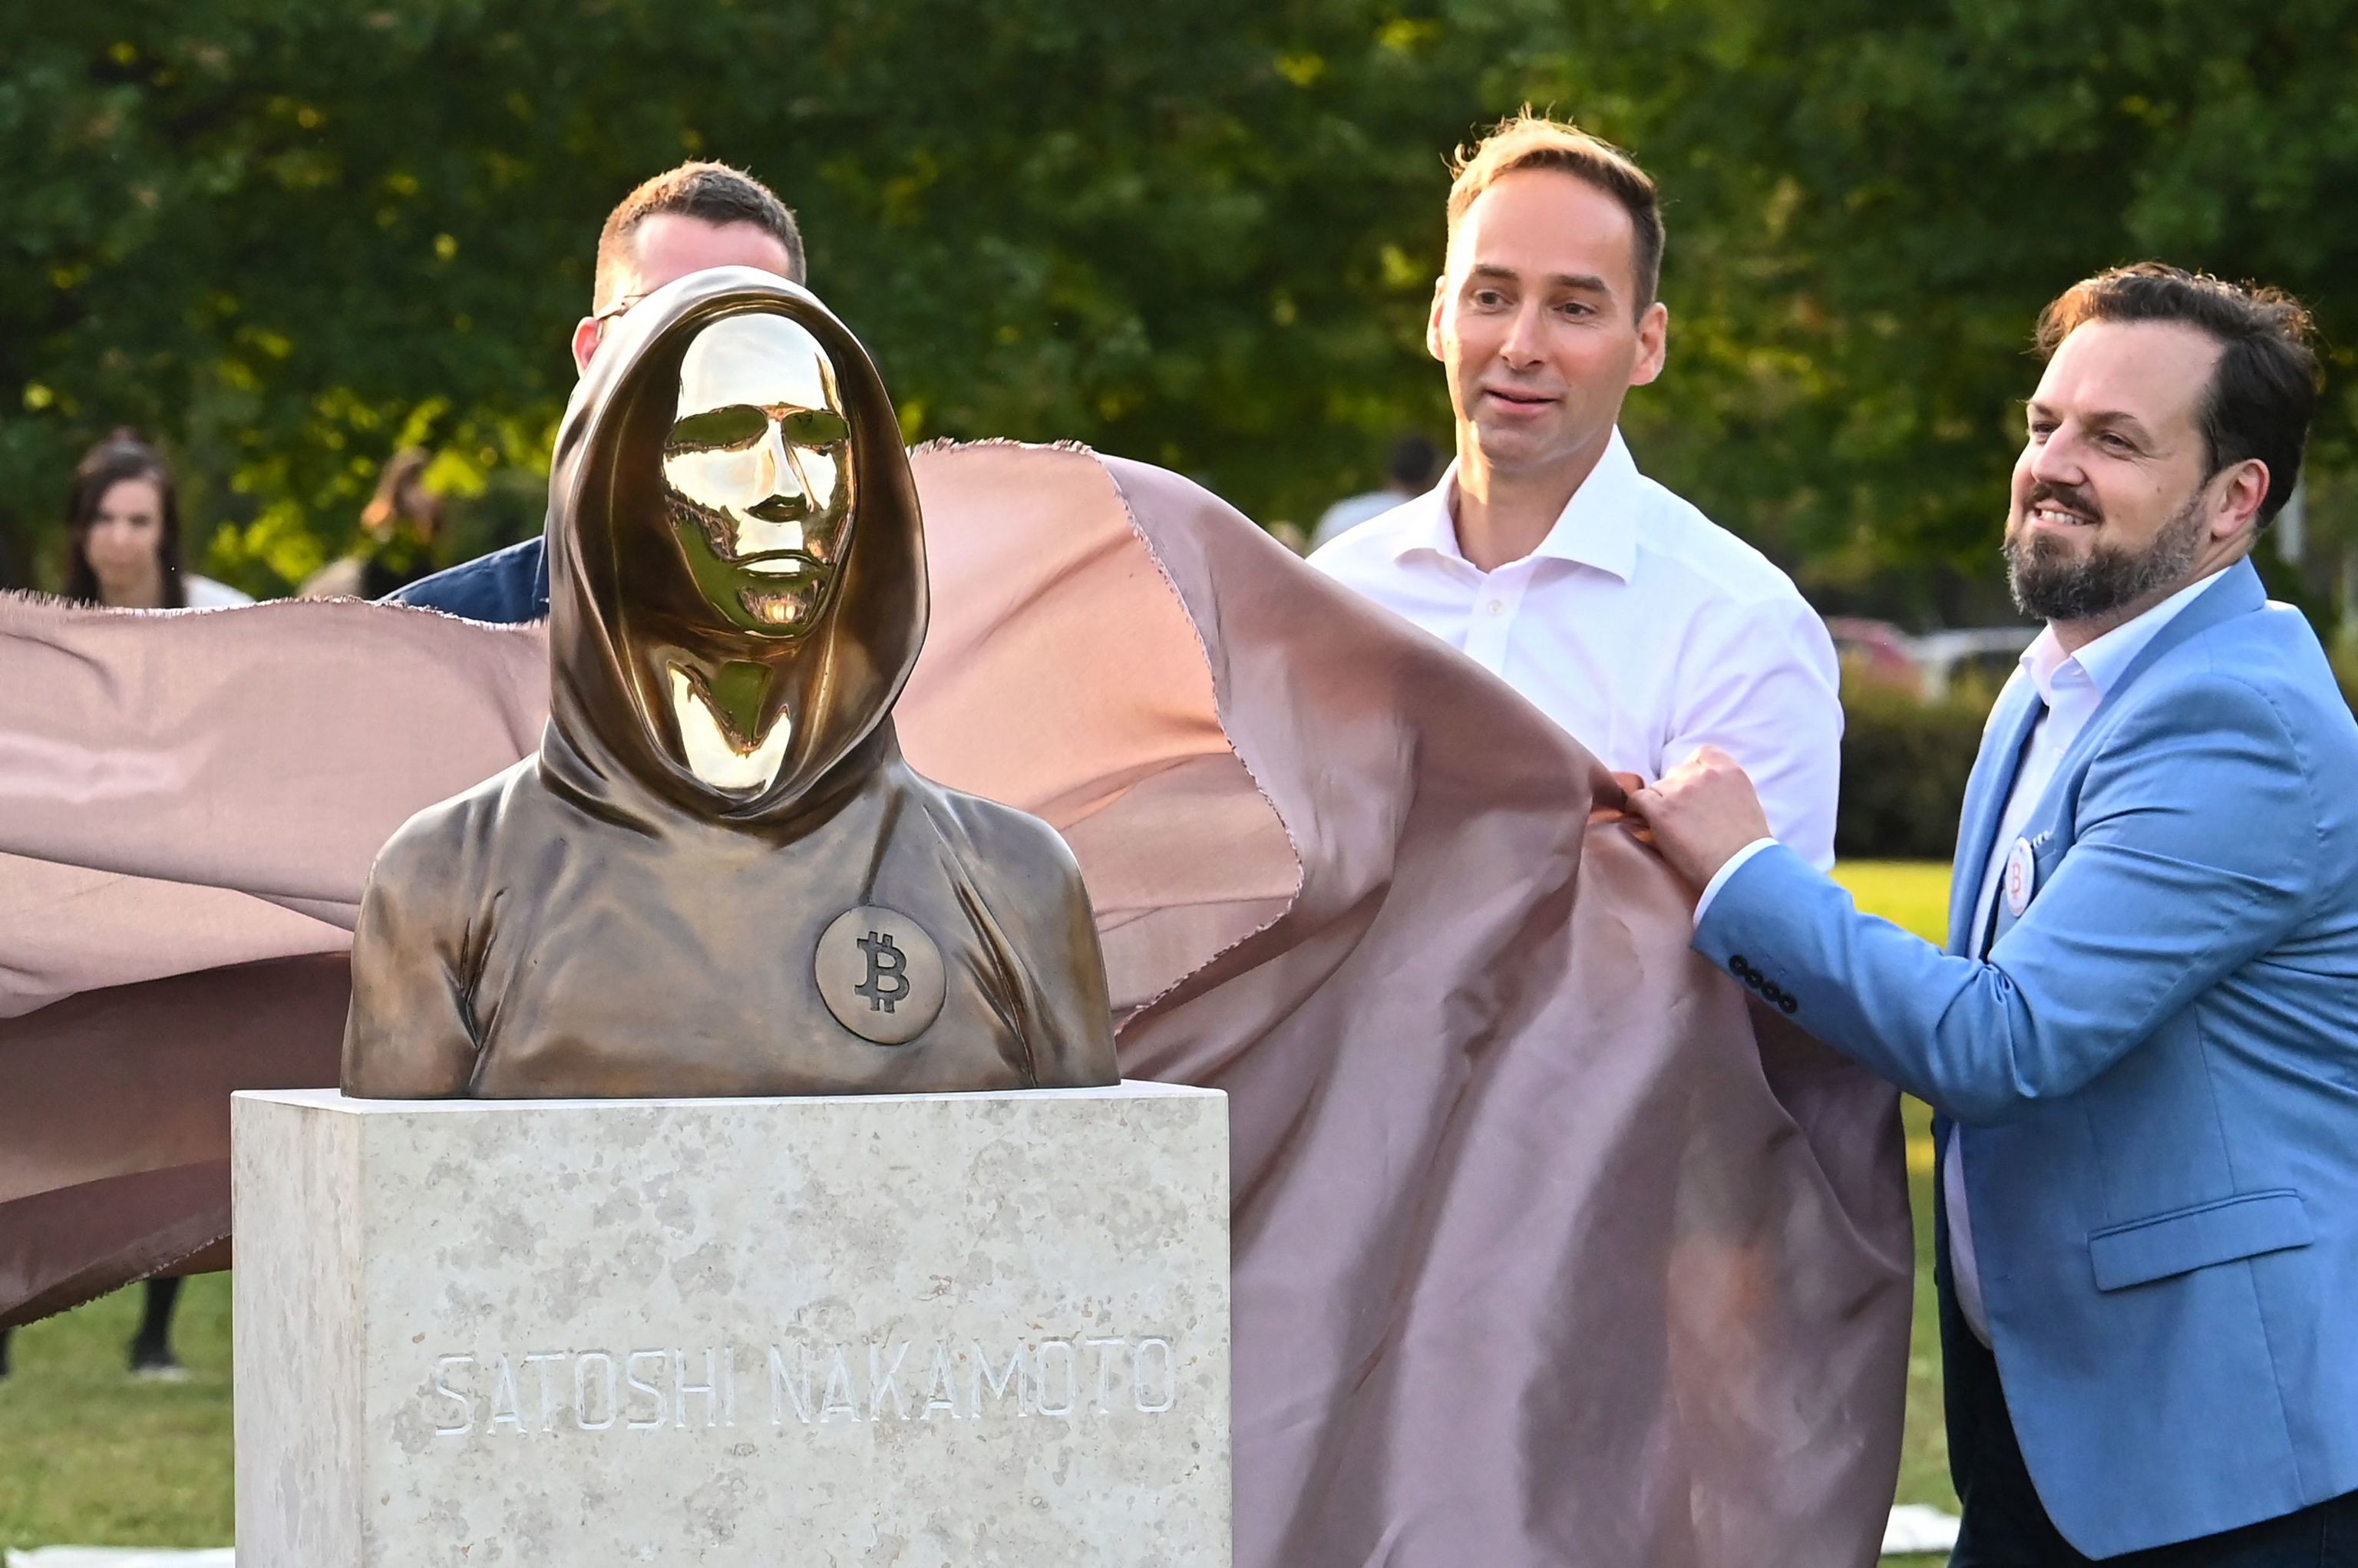 Descubren la estatua de Satoshi Nakamoto, el misterioso inventor de la moneda virtual bitcoin, en el parque Graphisoft de Budapest, el 16 de septiembre de 2021.